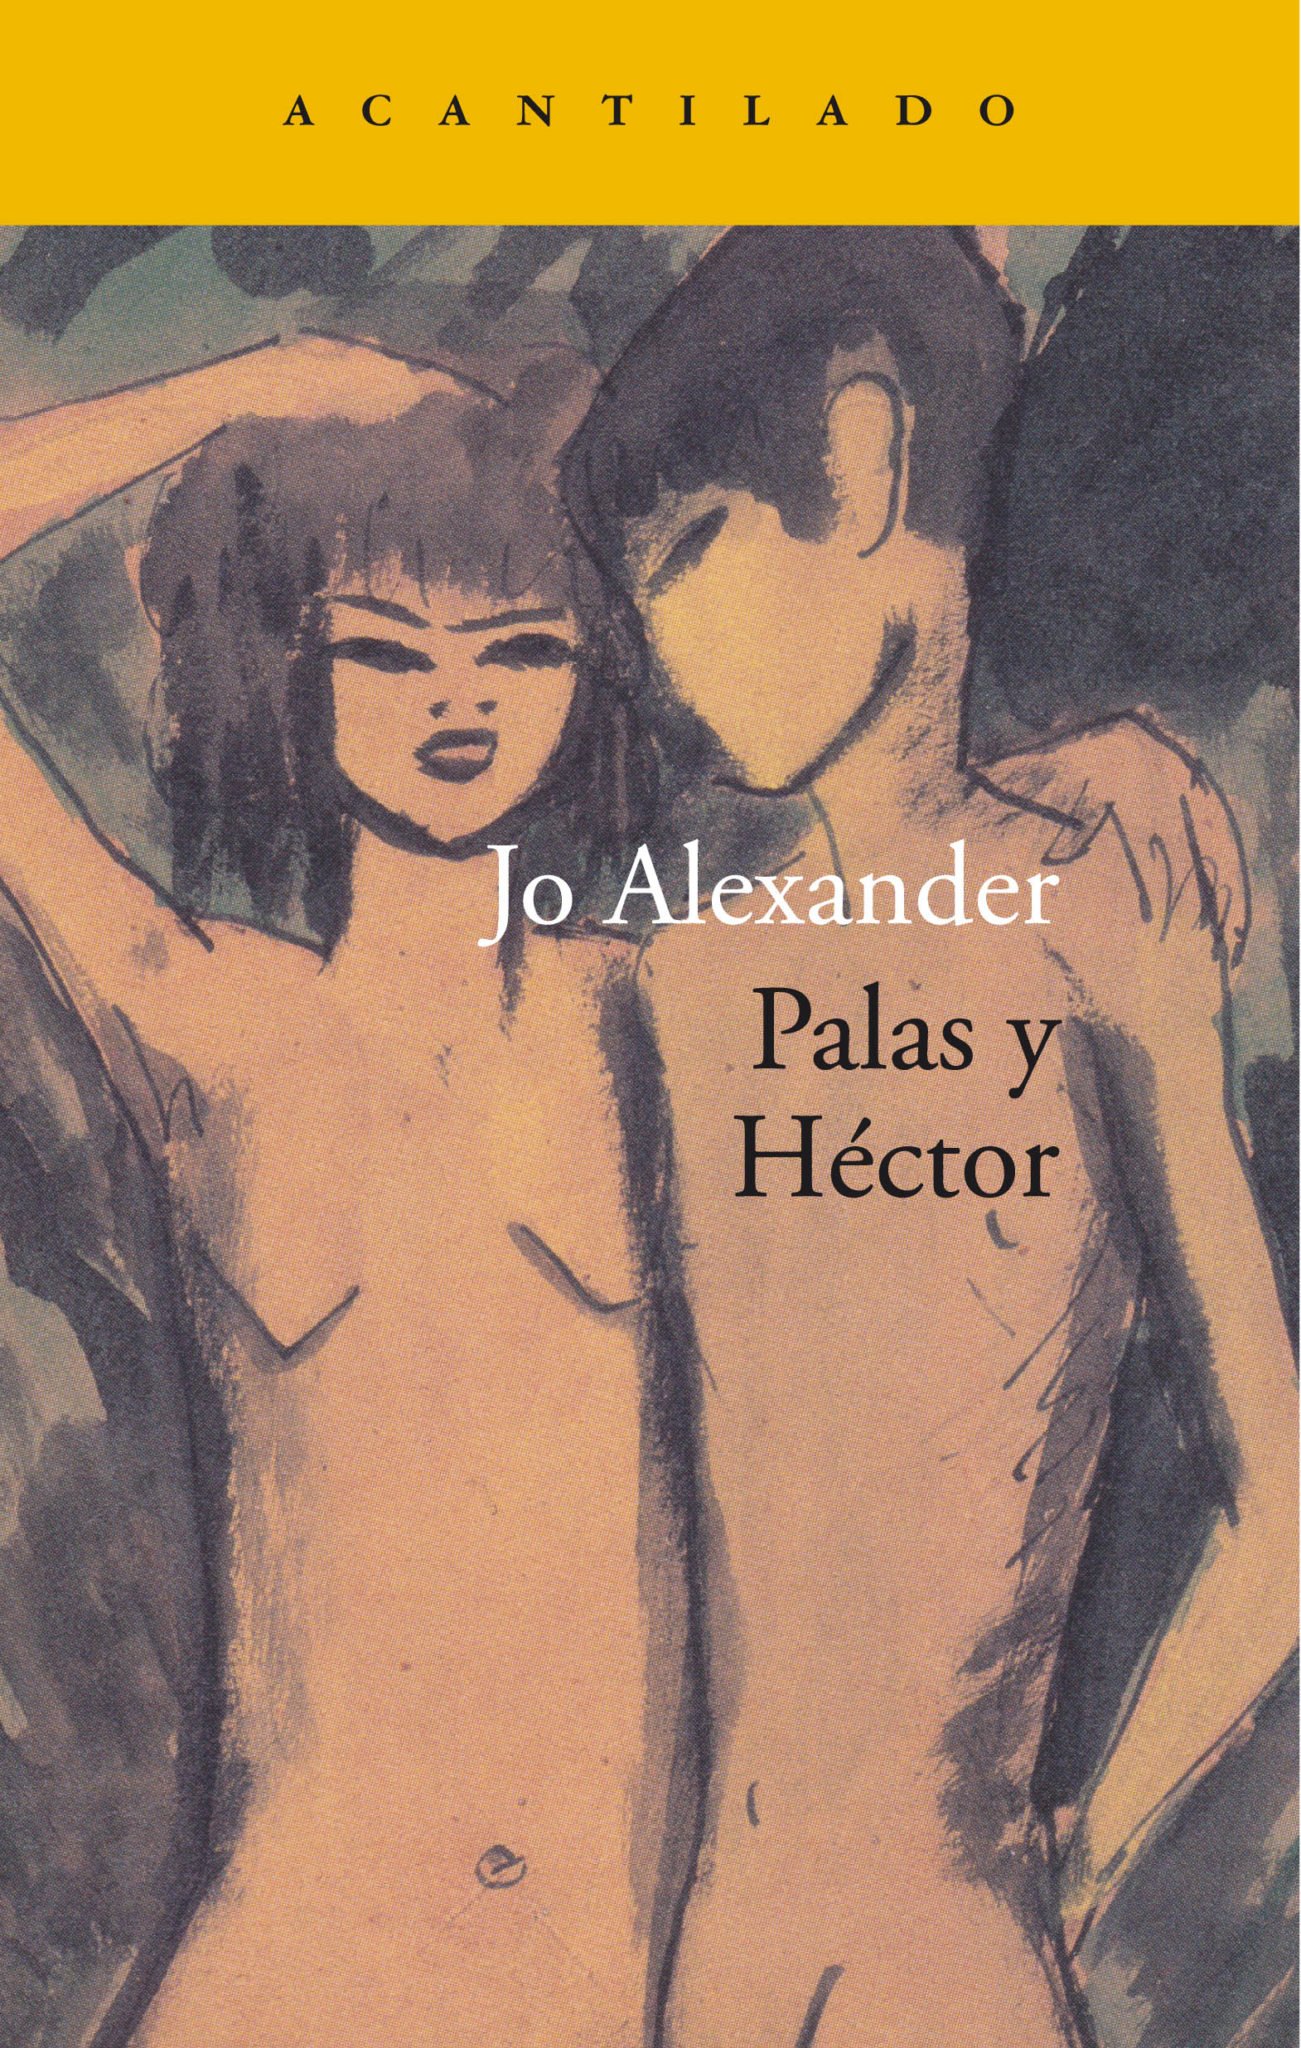 Jo Alexander, autora de 'Palas y Héctor': "M'atreu la sensualitat fosca"